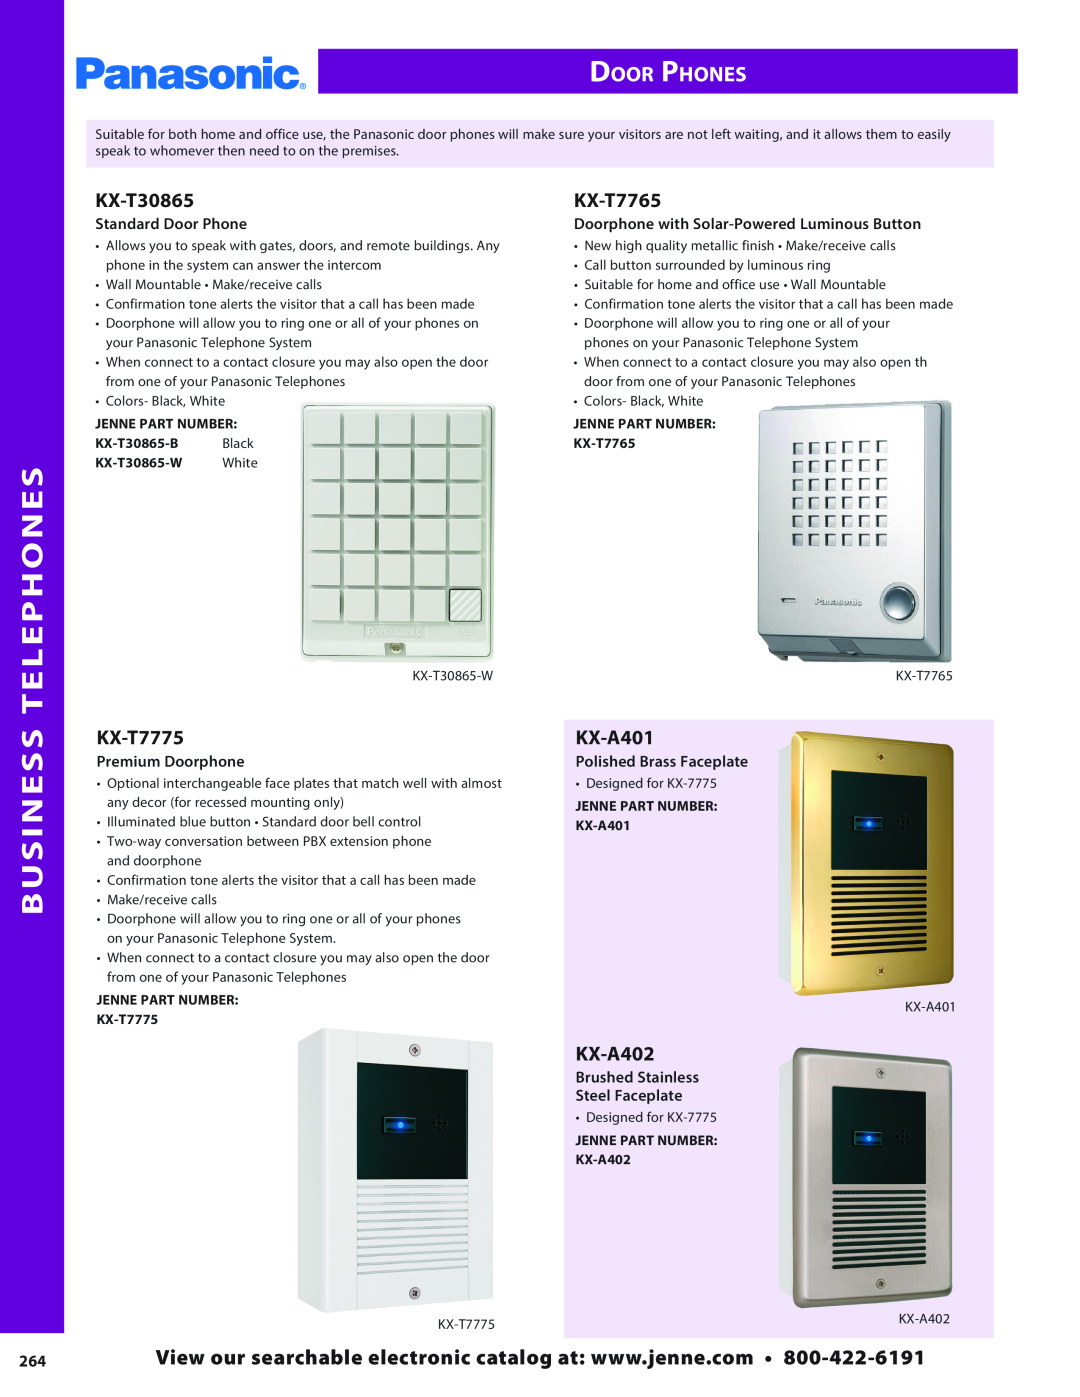 Panasonic PMPU2000 Telephones, Business, Door Phones, Standard Door Phone, Doorphone with Solar-PoweredLuminous Button 